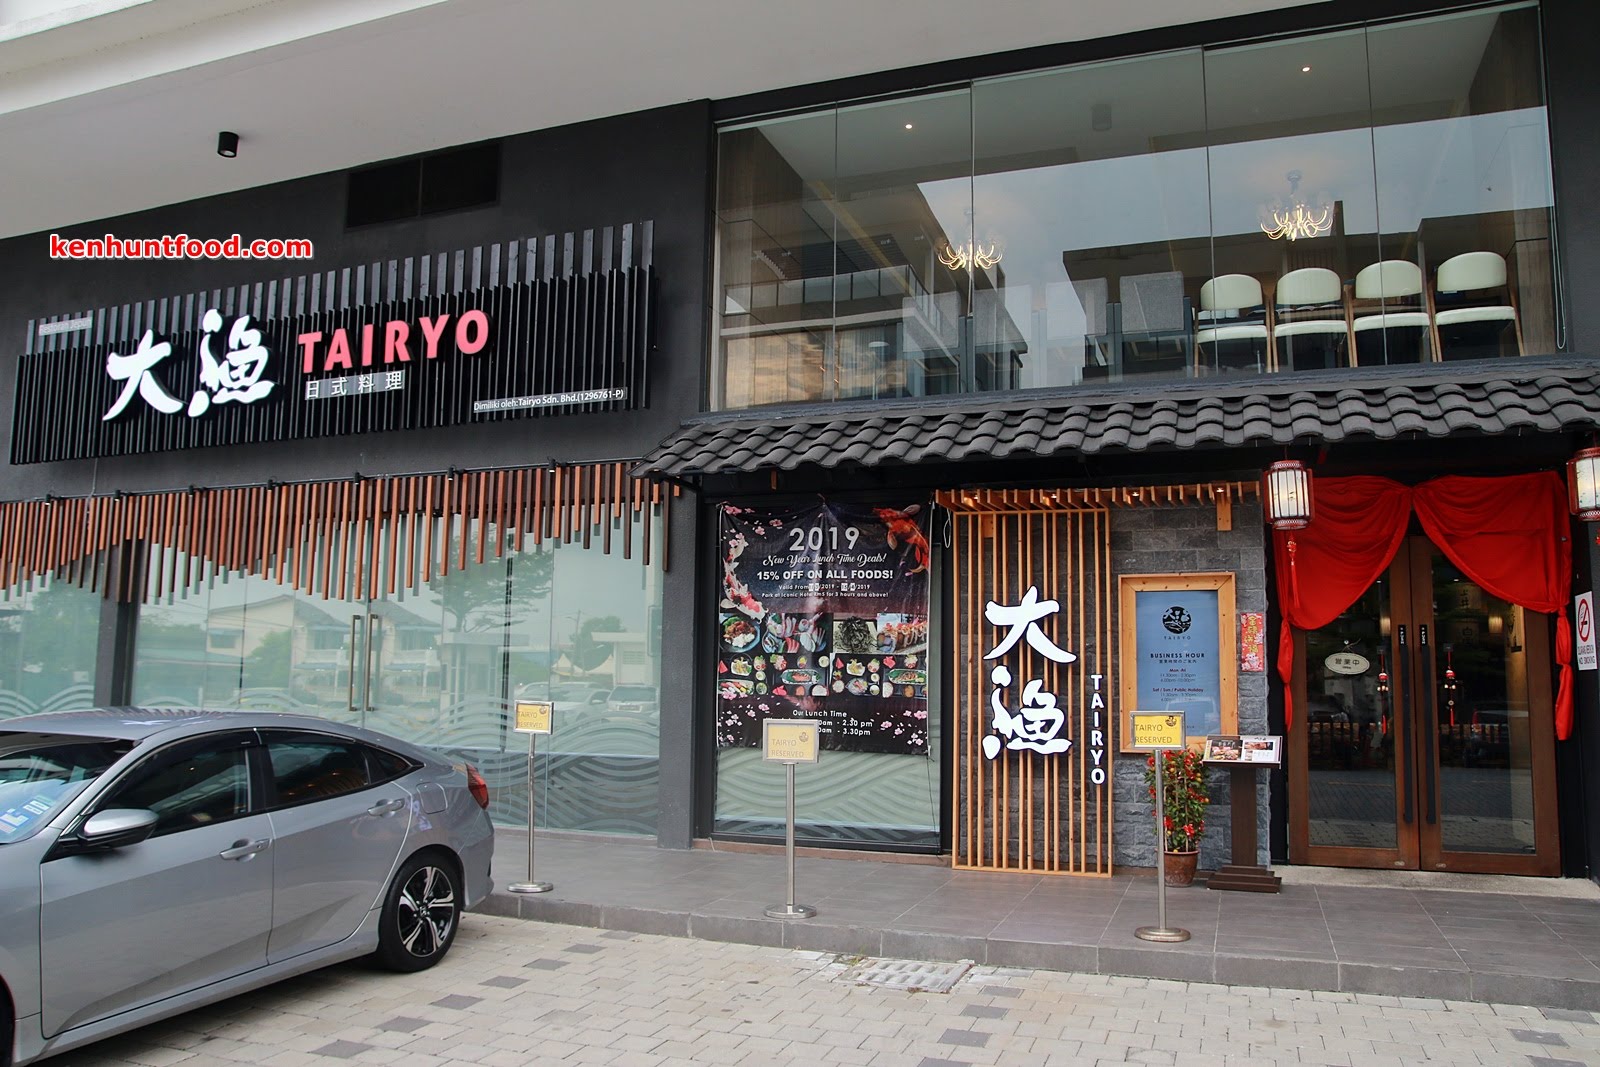 Tairyo japanese restaurant